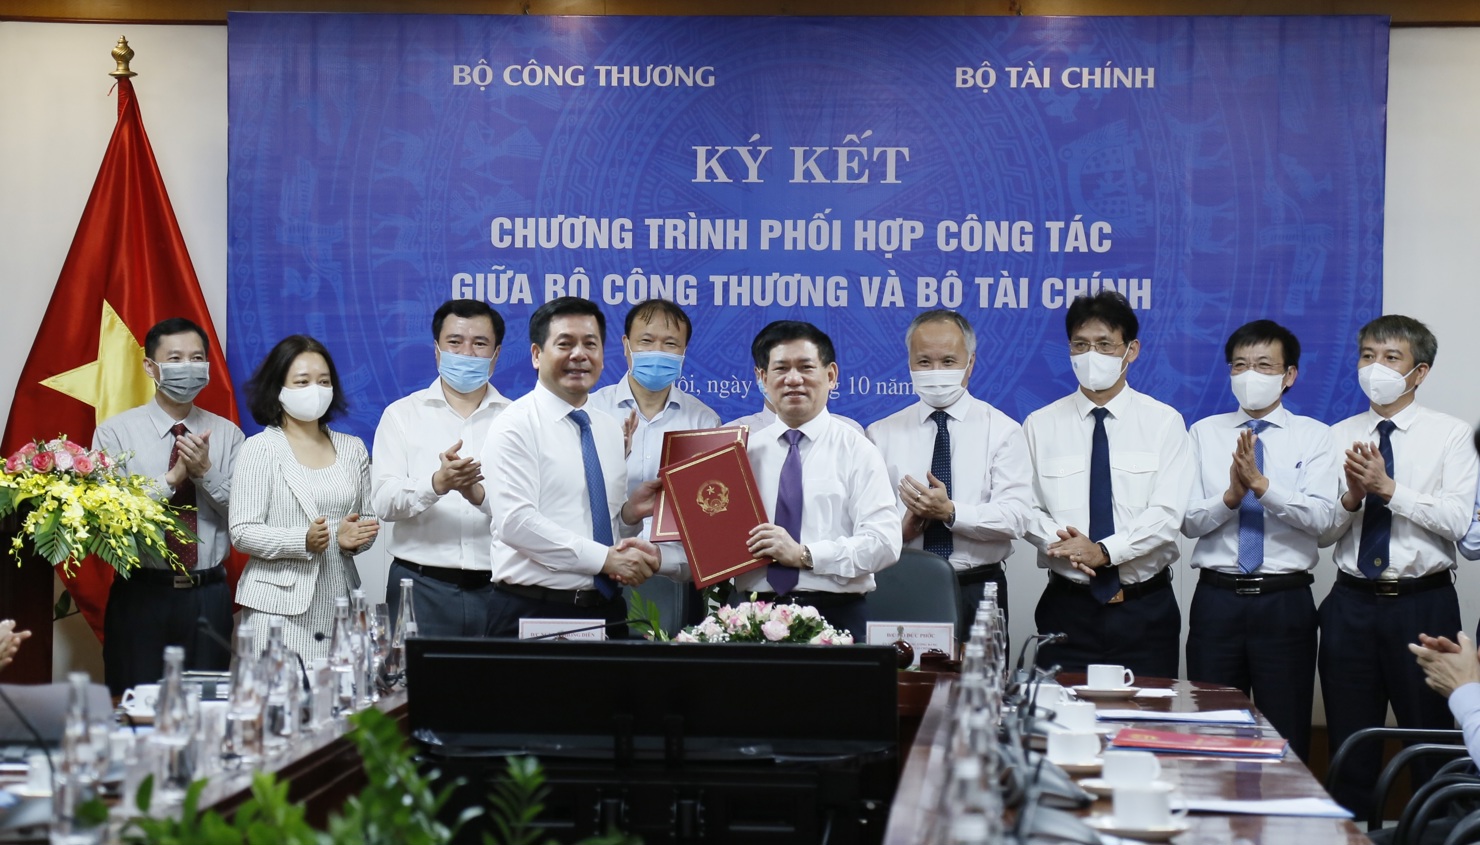 Bộ trưởng Bộ Tài chính Hồ Đức Phớc và Bộ trưởng Bộ Công Thương Nguyễn Hồng Diên ký kết chương trình hợp tác giữa hai Bộ.